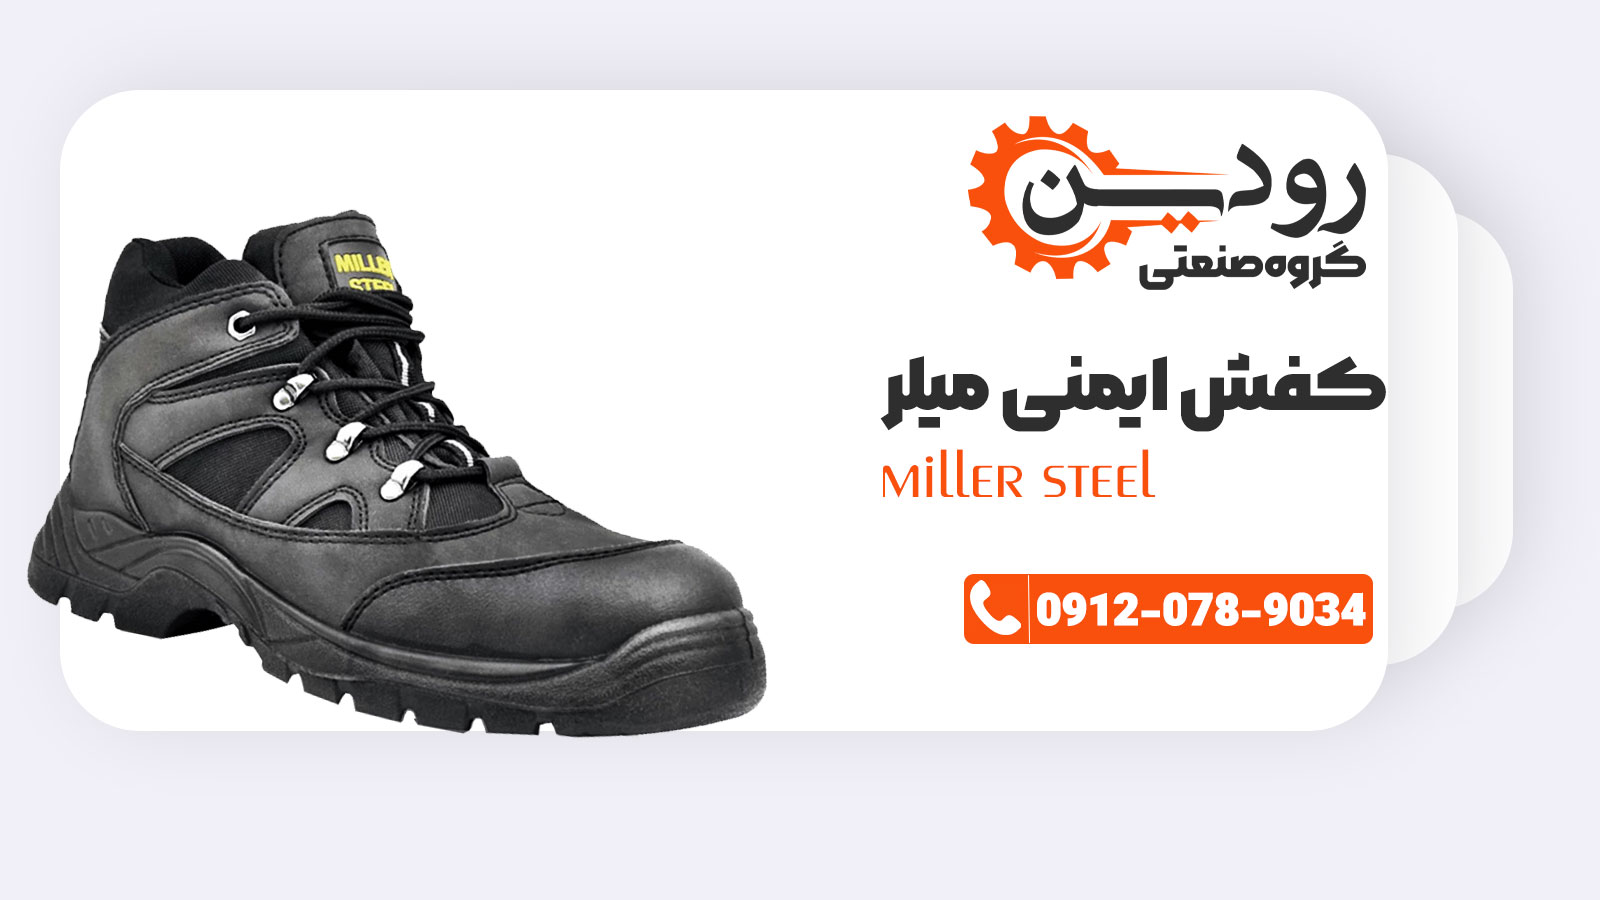 پخش عمده کفش میلر قیمت مناسب در شرکت رودین انجام میشود.